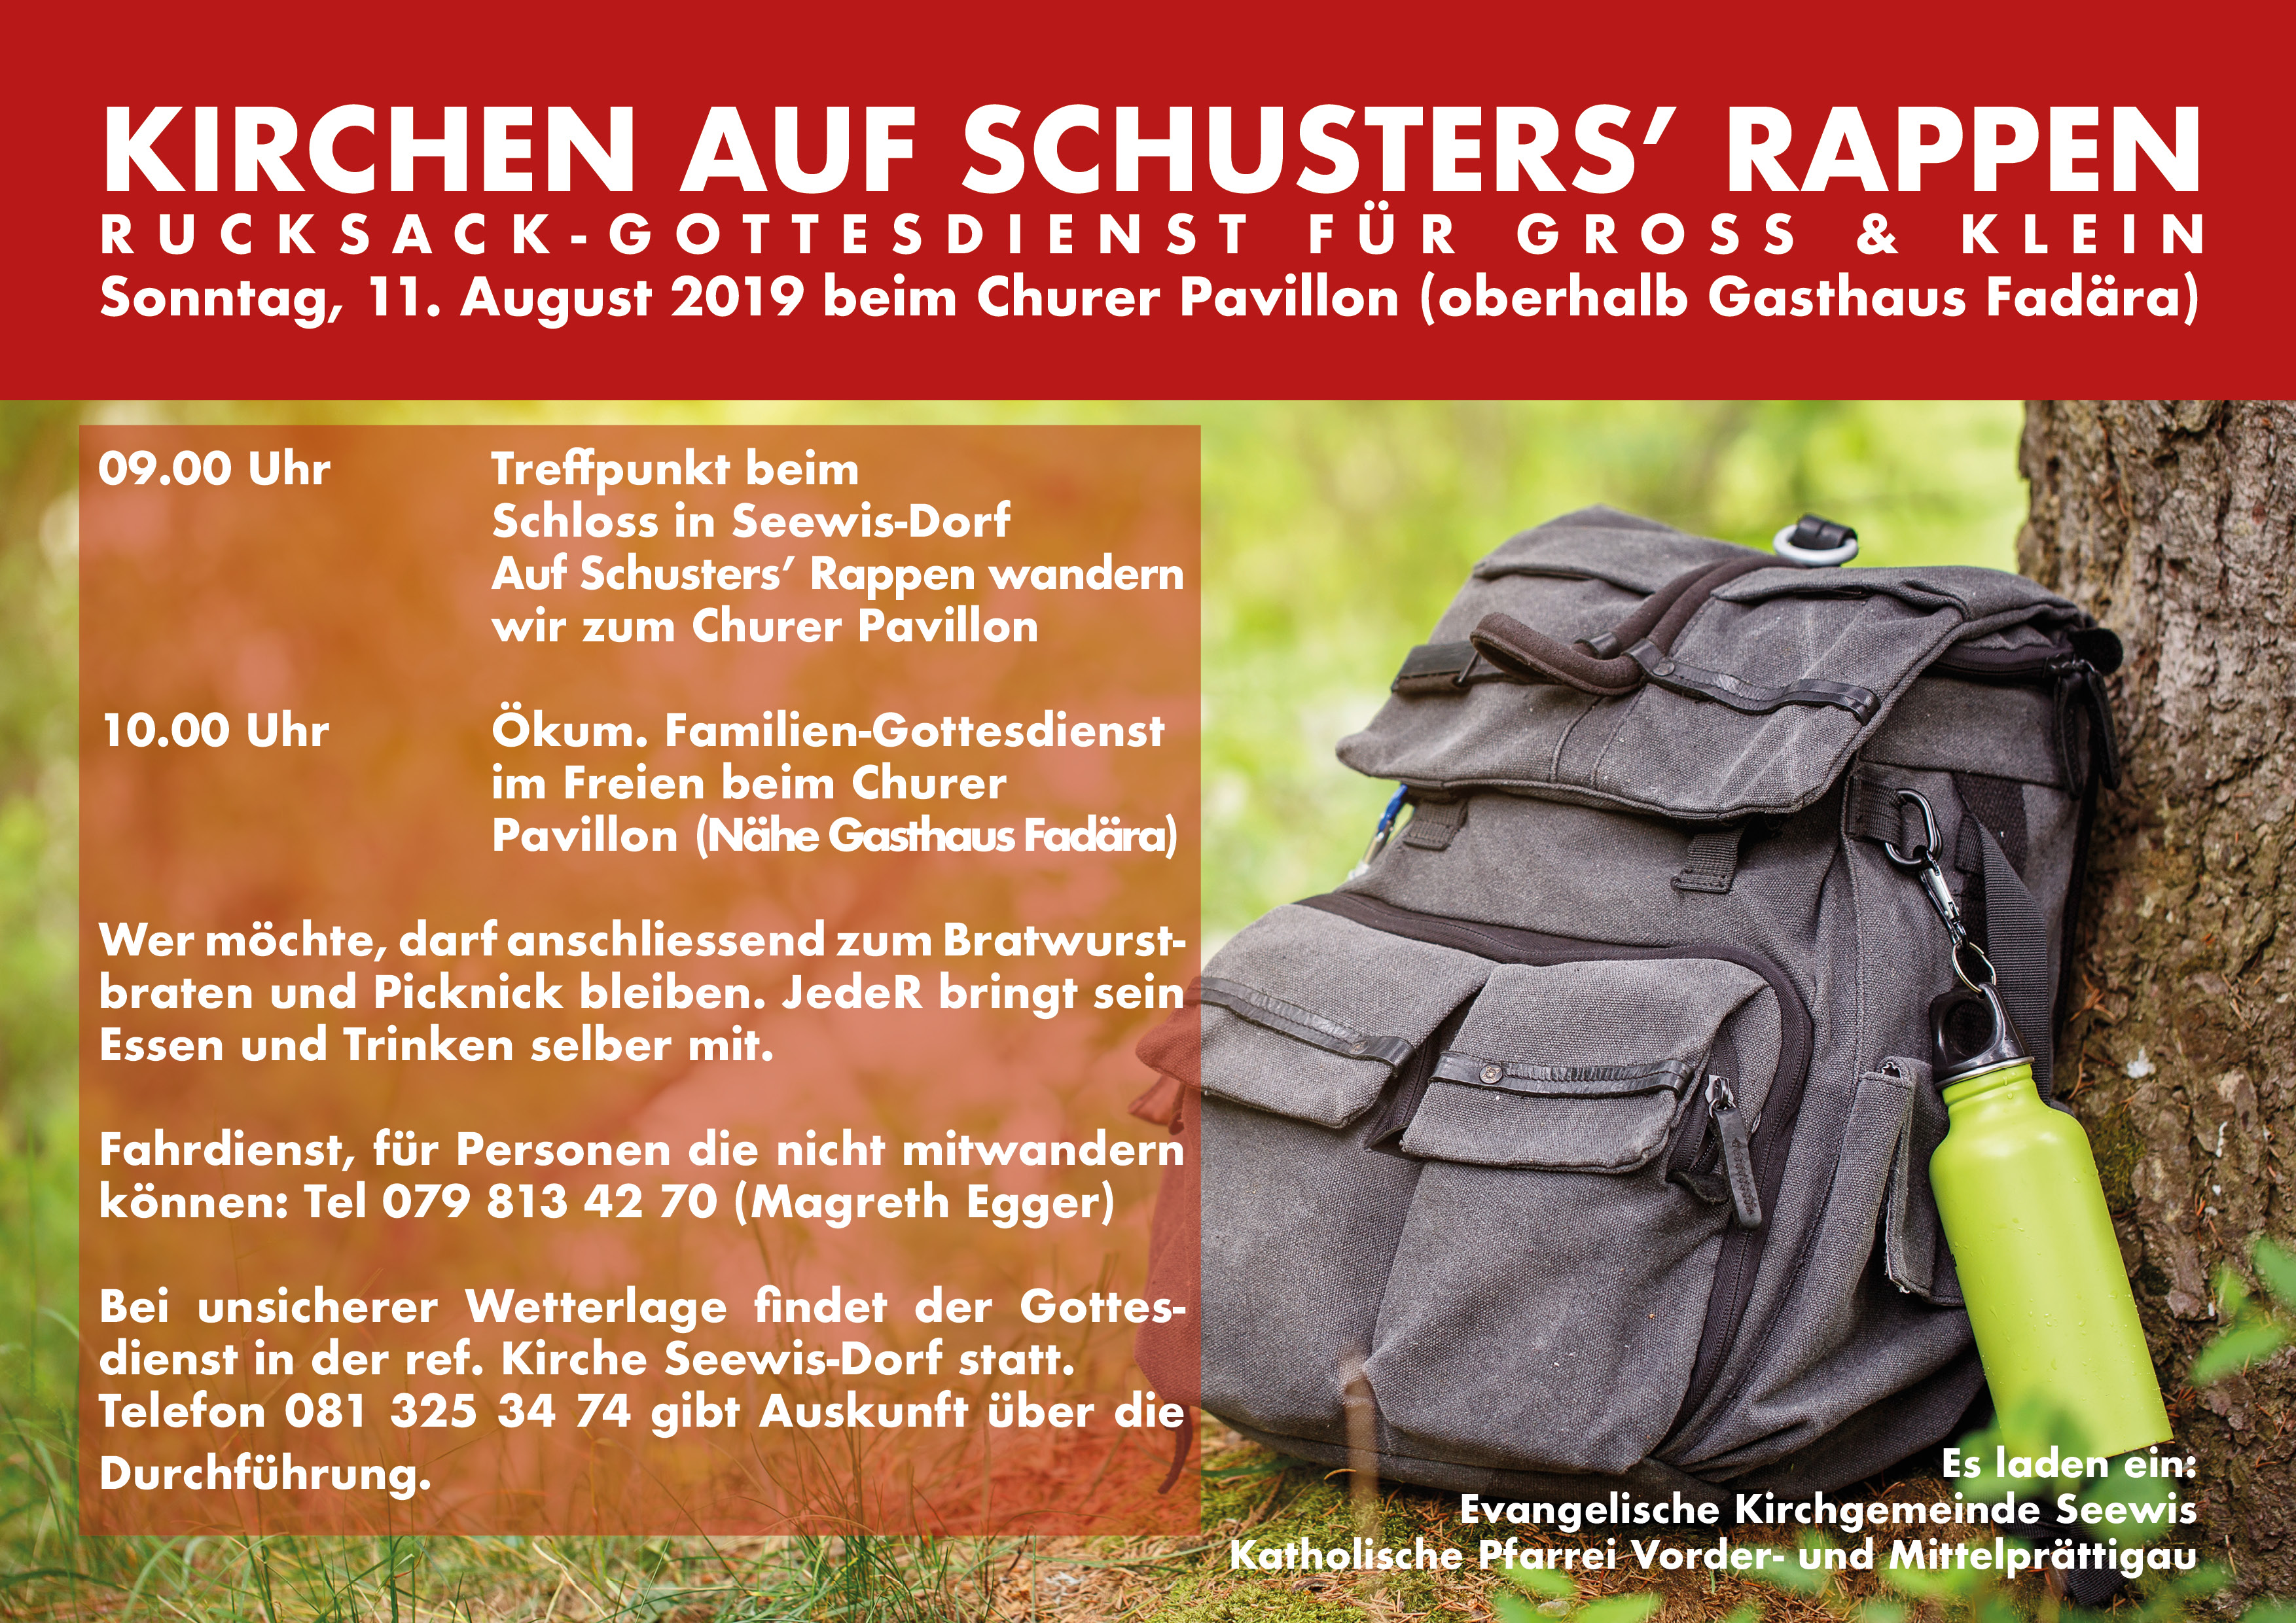 Kirchen auf Schusters’ Rappen am Sonntag, 11. August